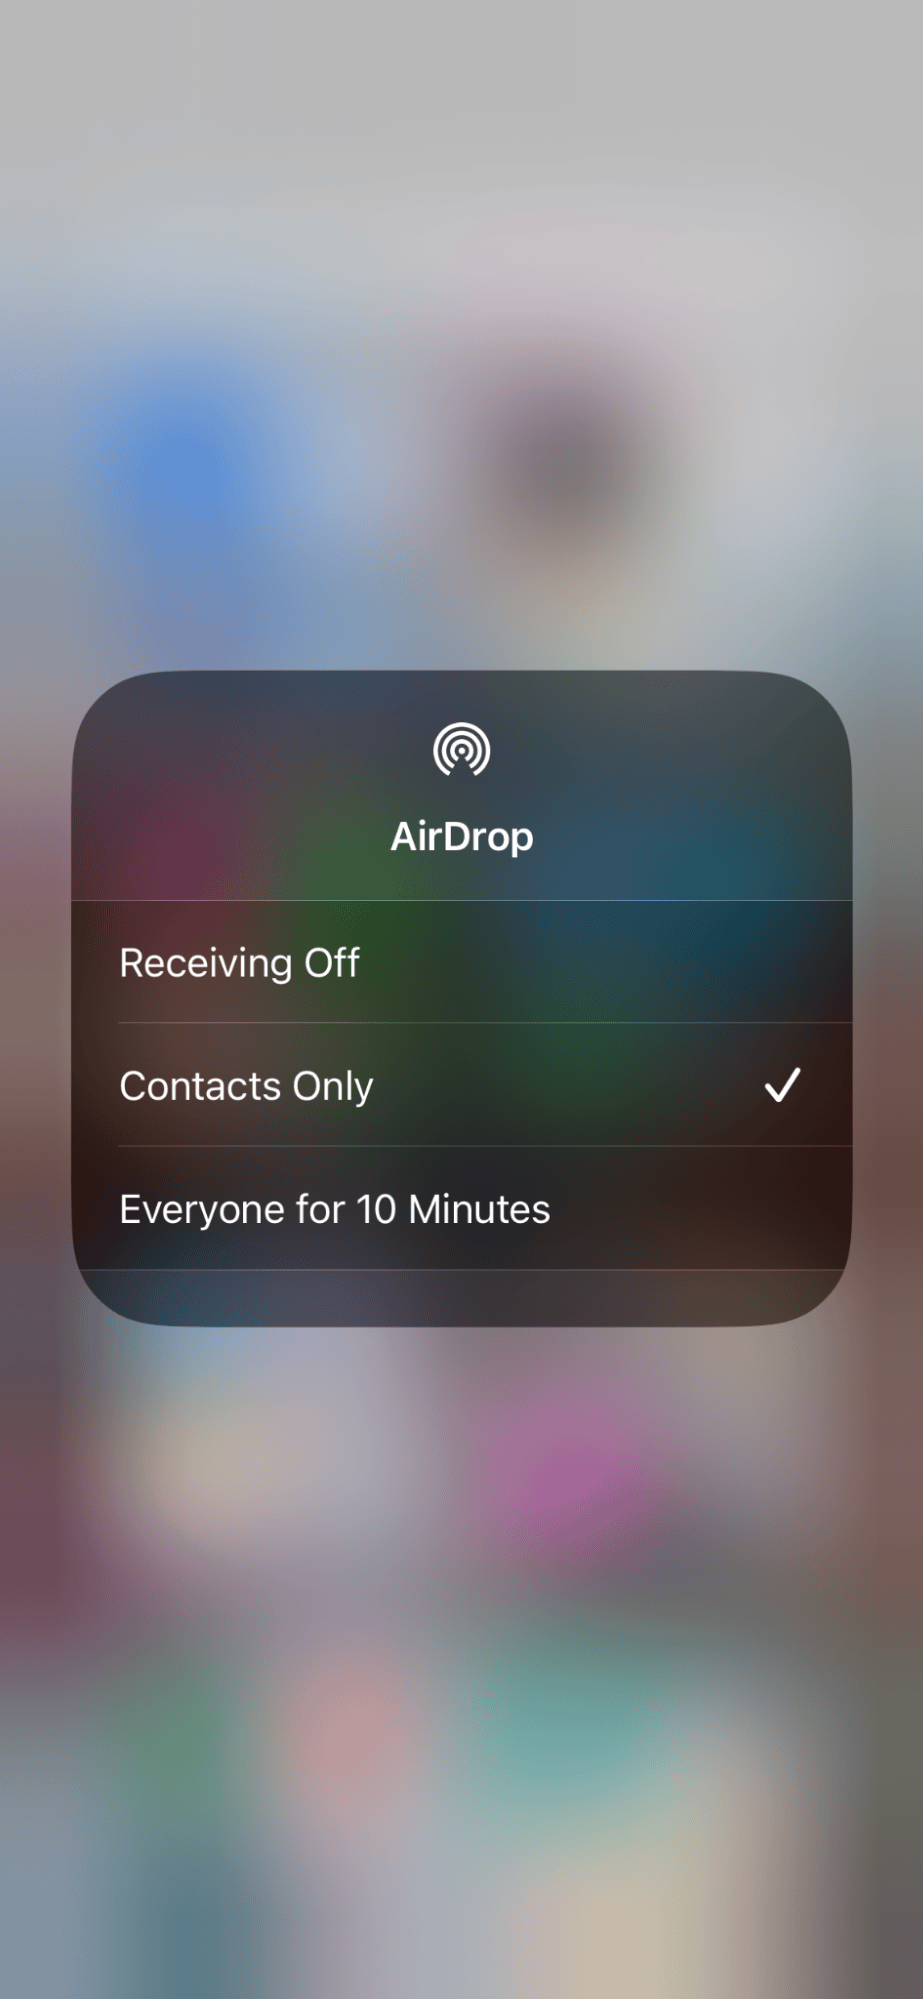 Enabling AirDrop on iPhone 